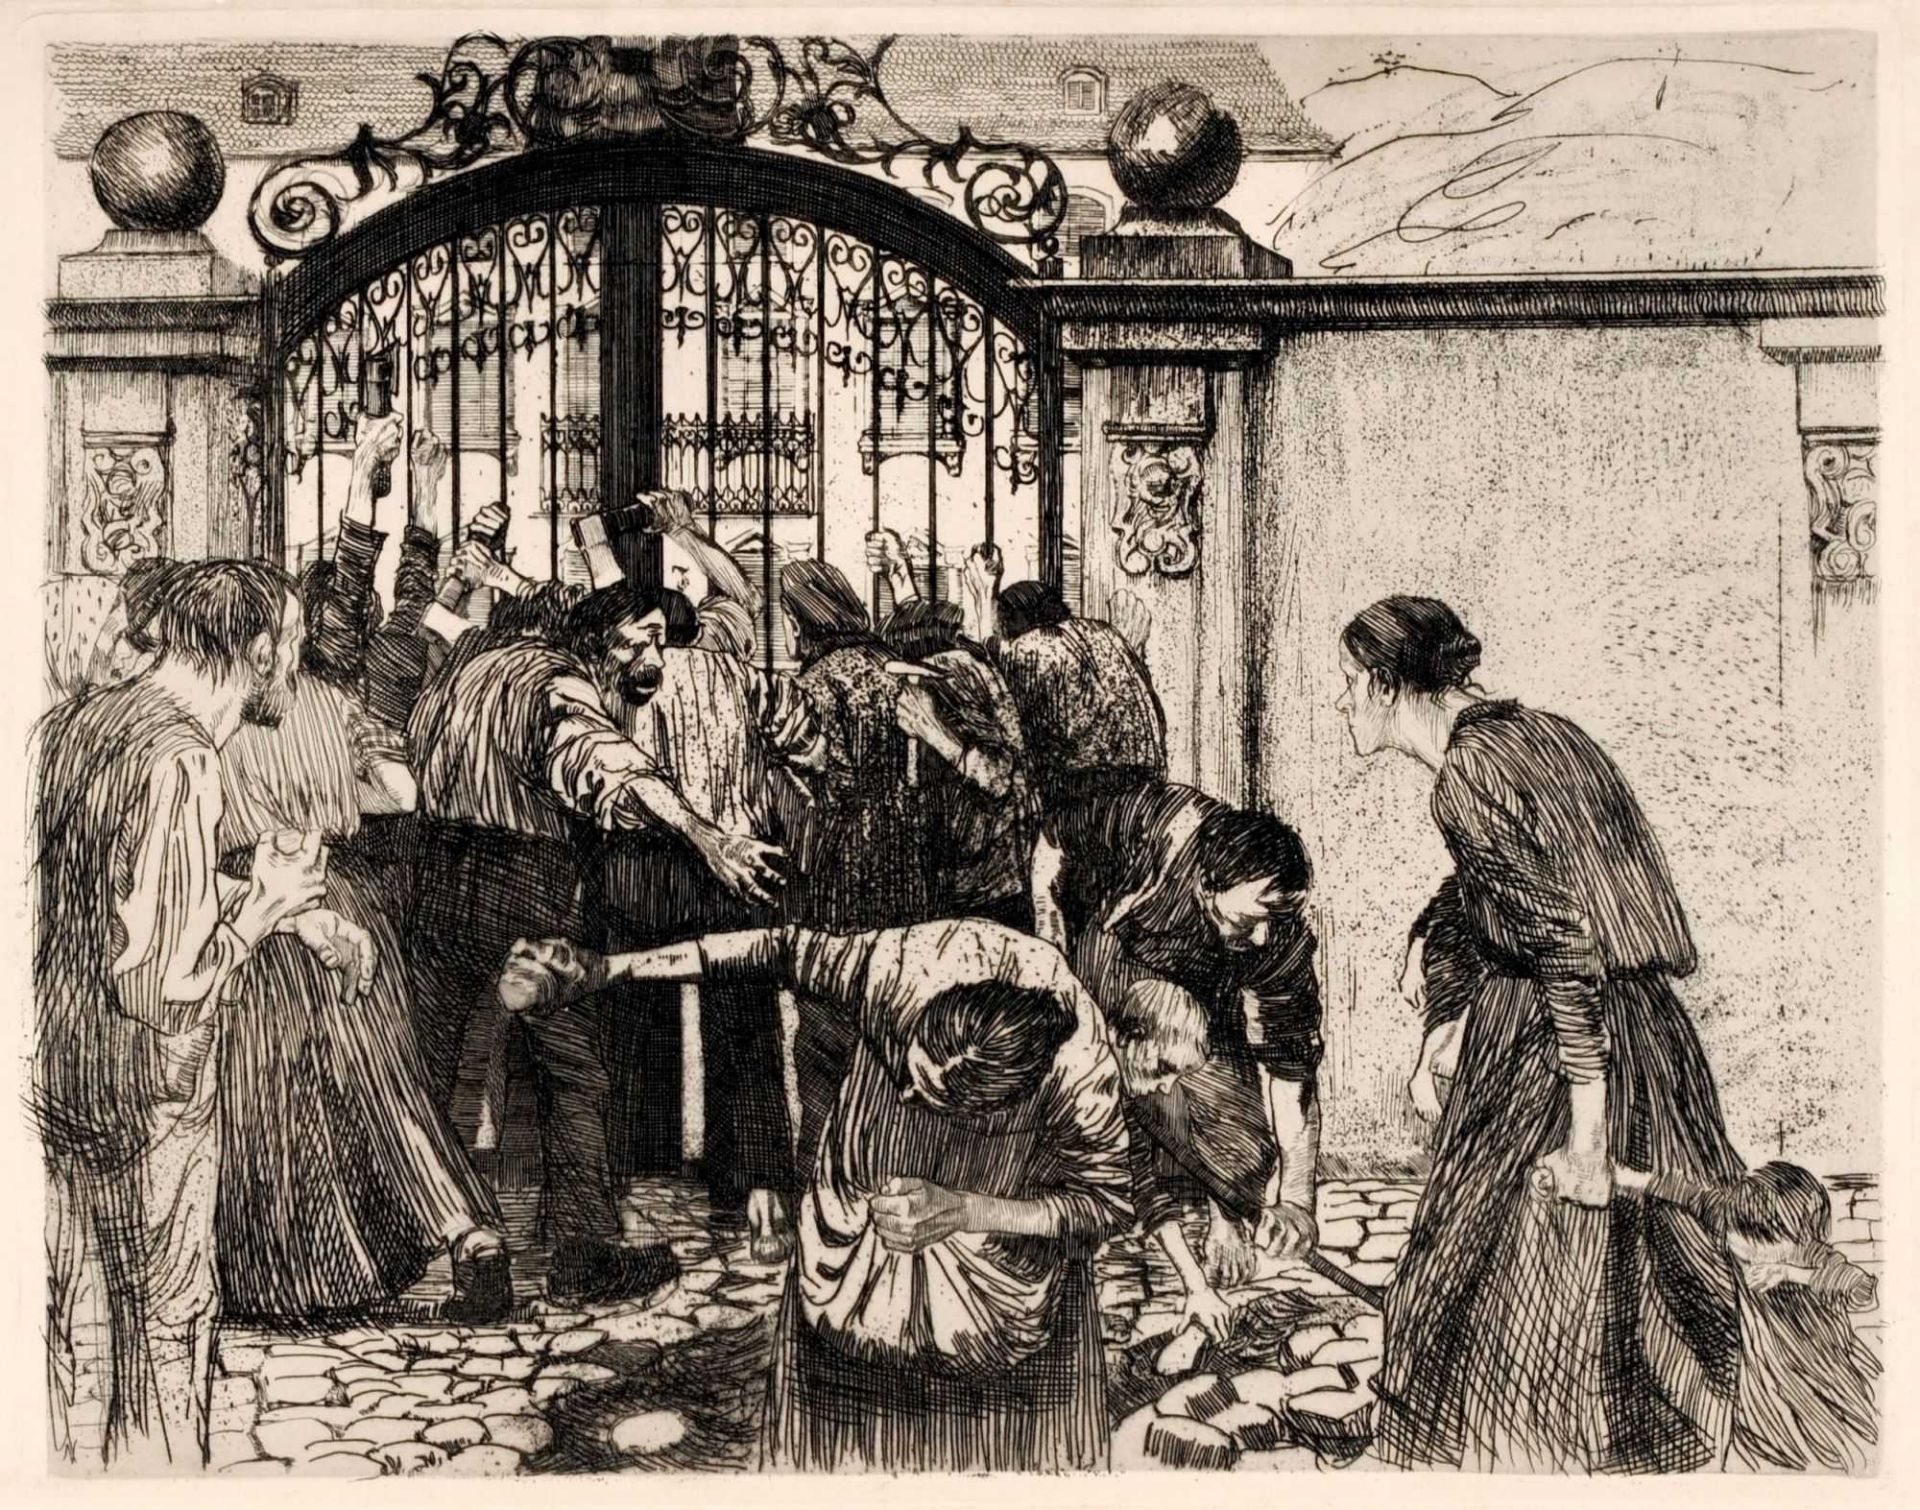 Käthe Kollwitz "Sturm". 1897.